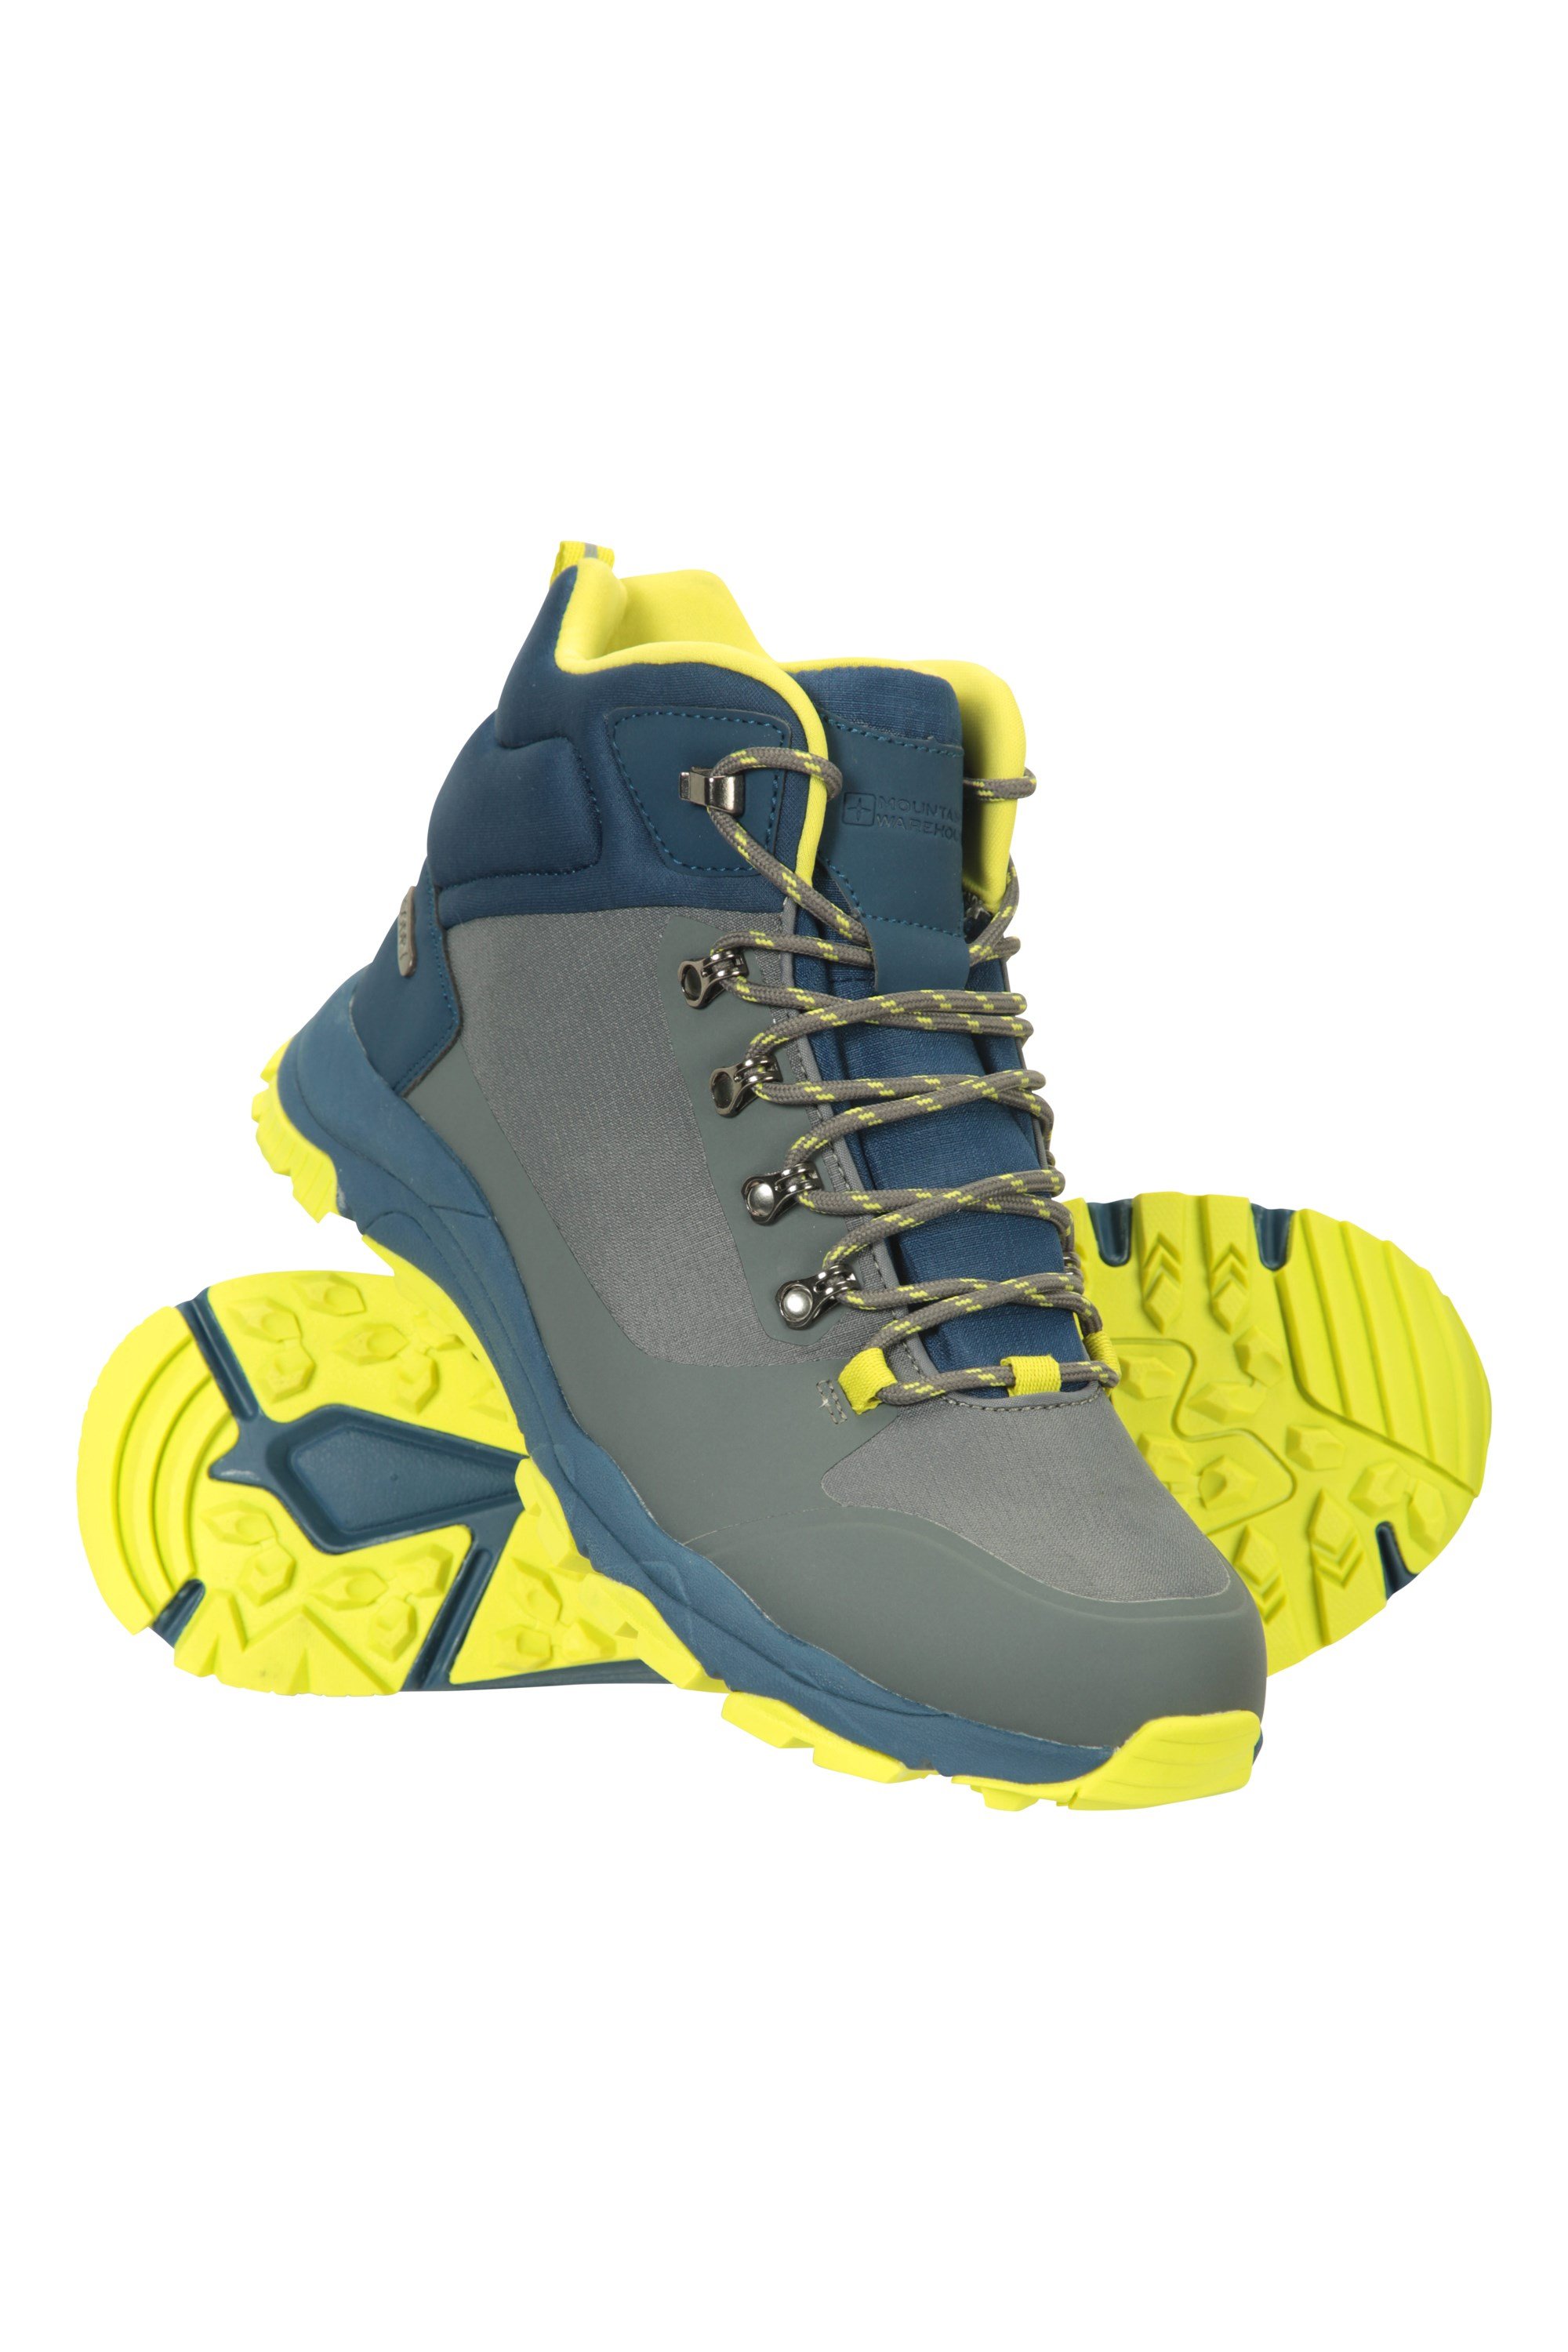 Karakoram Lightweight Waterproof Boots | Mountain NZ